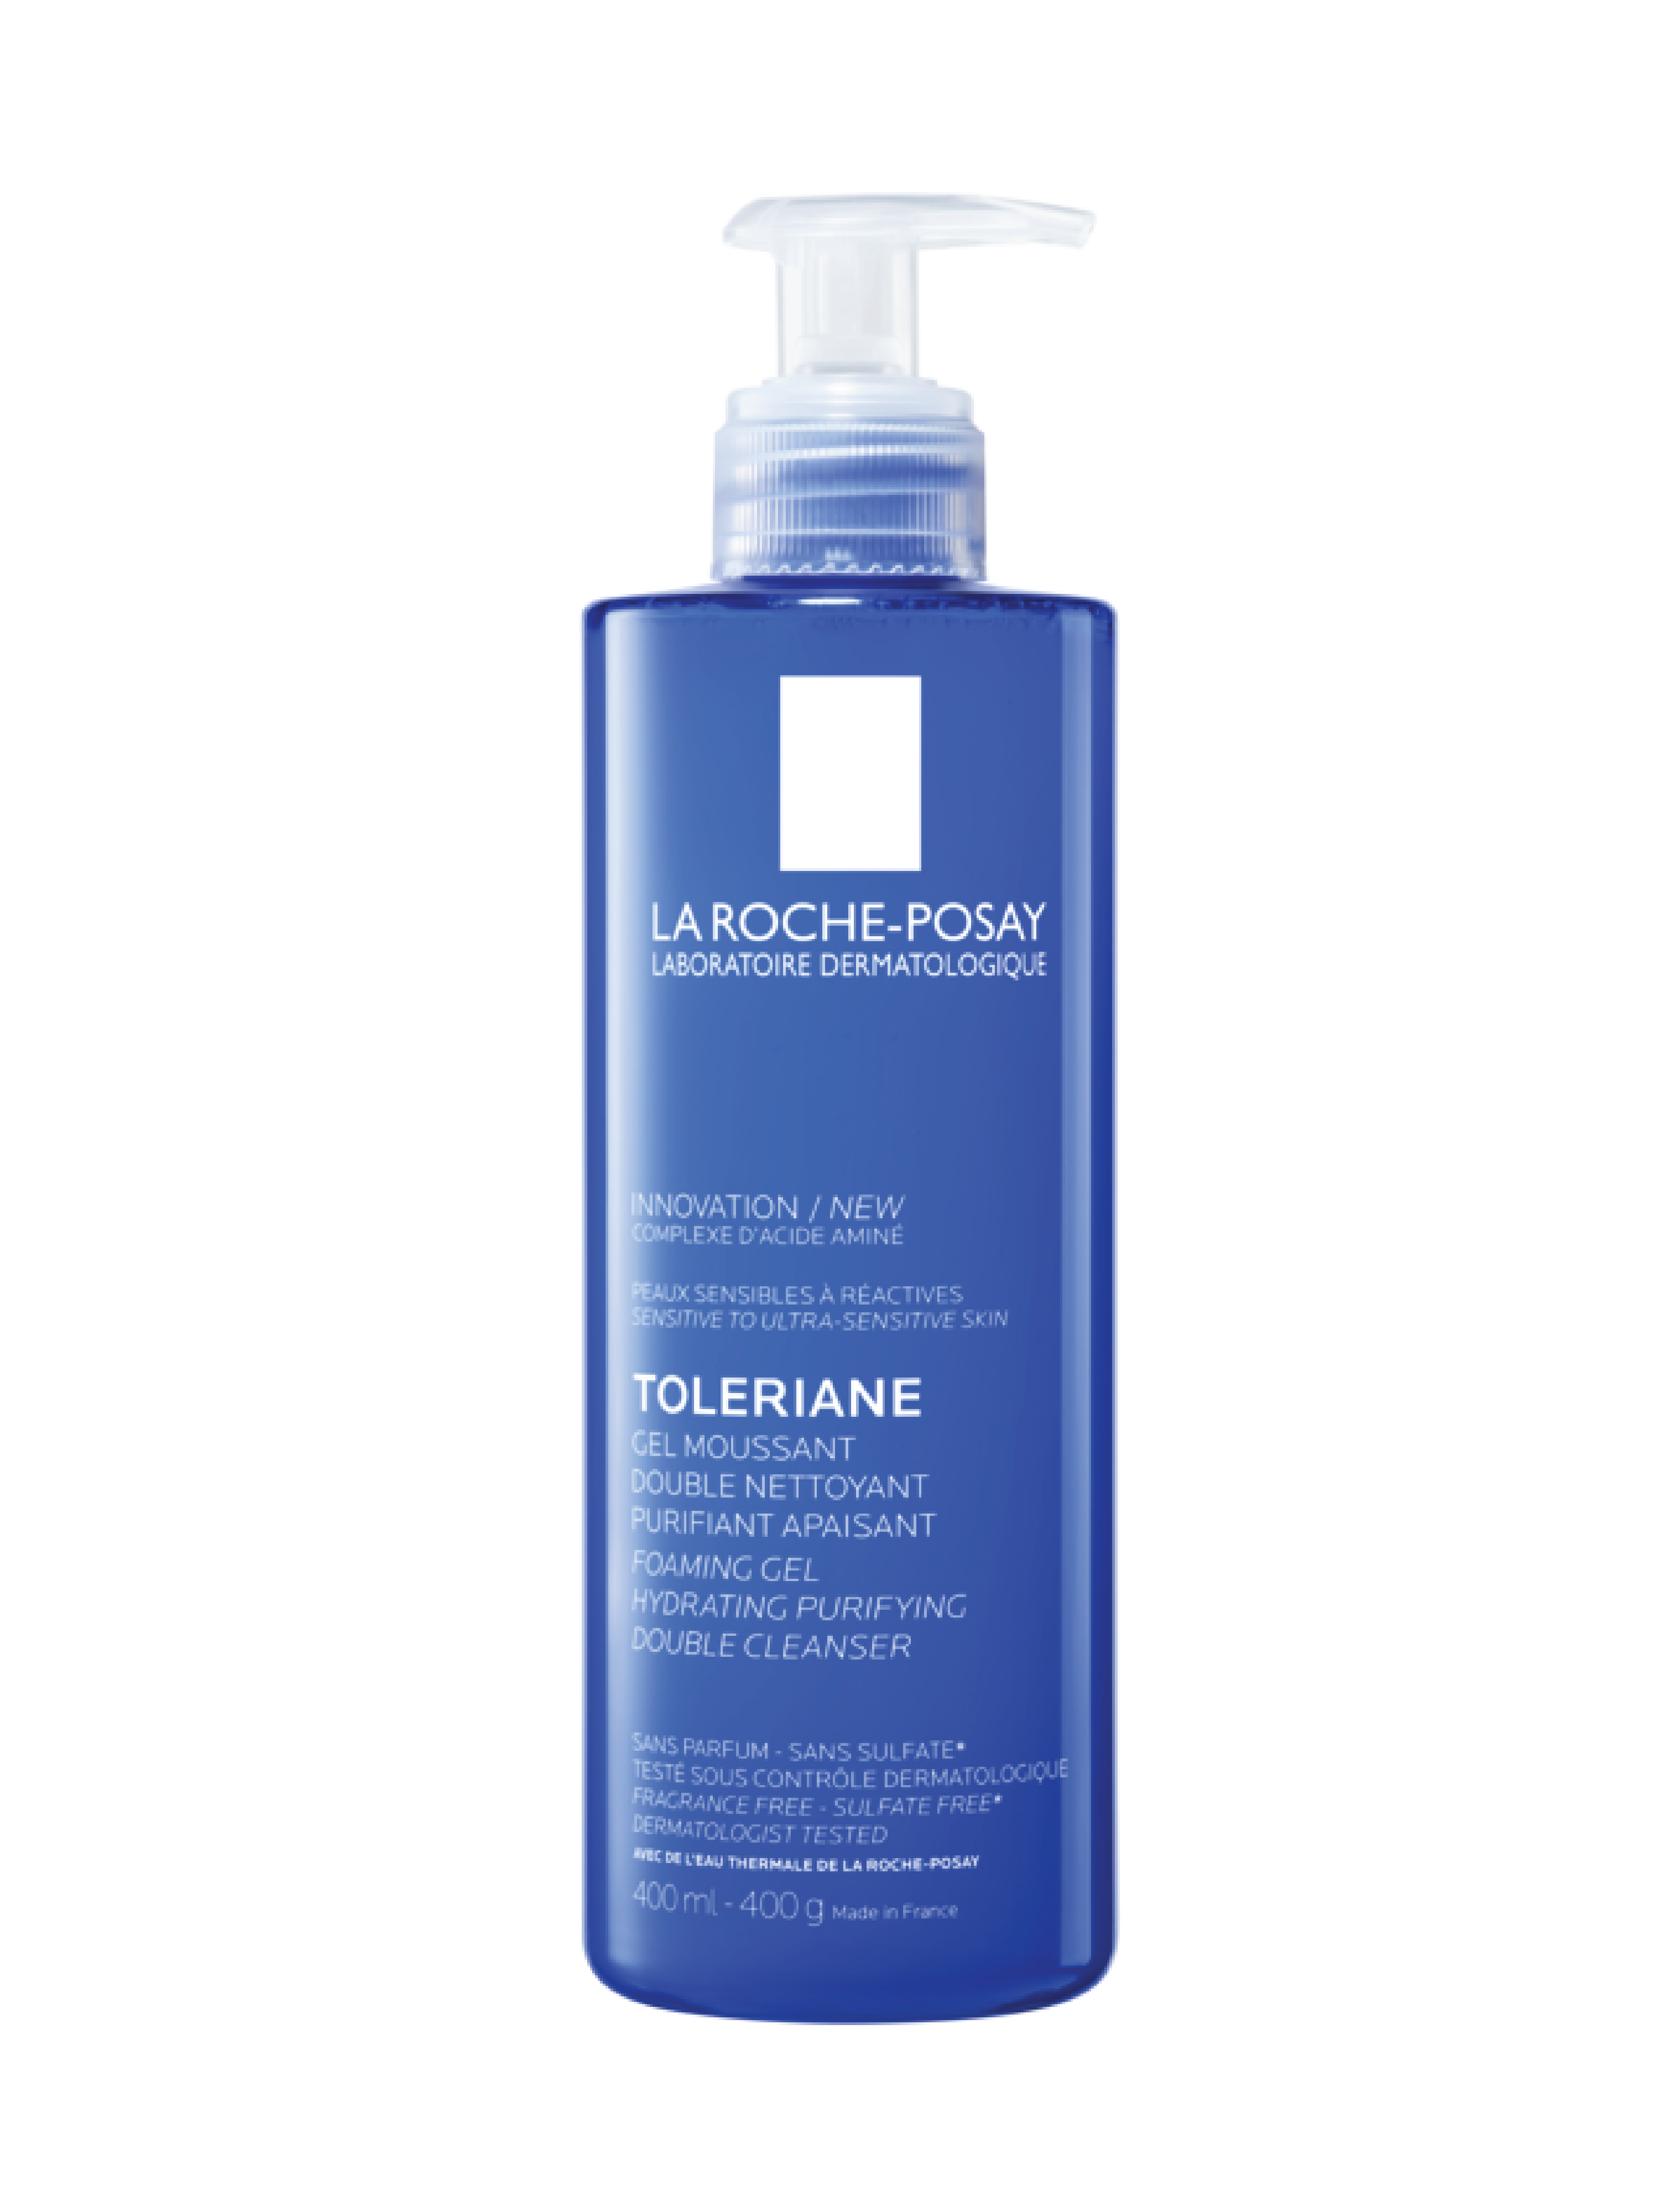 La Roche-Posay Toleriane Foaming Gel Double Cleanser, 400 ml